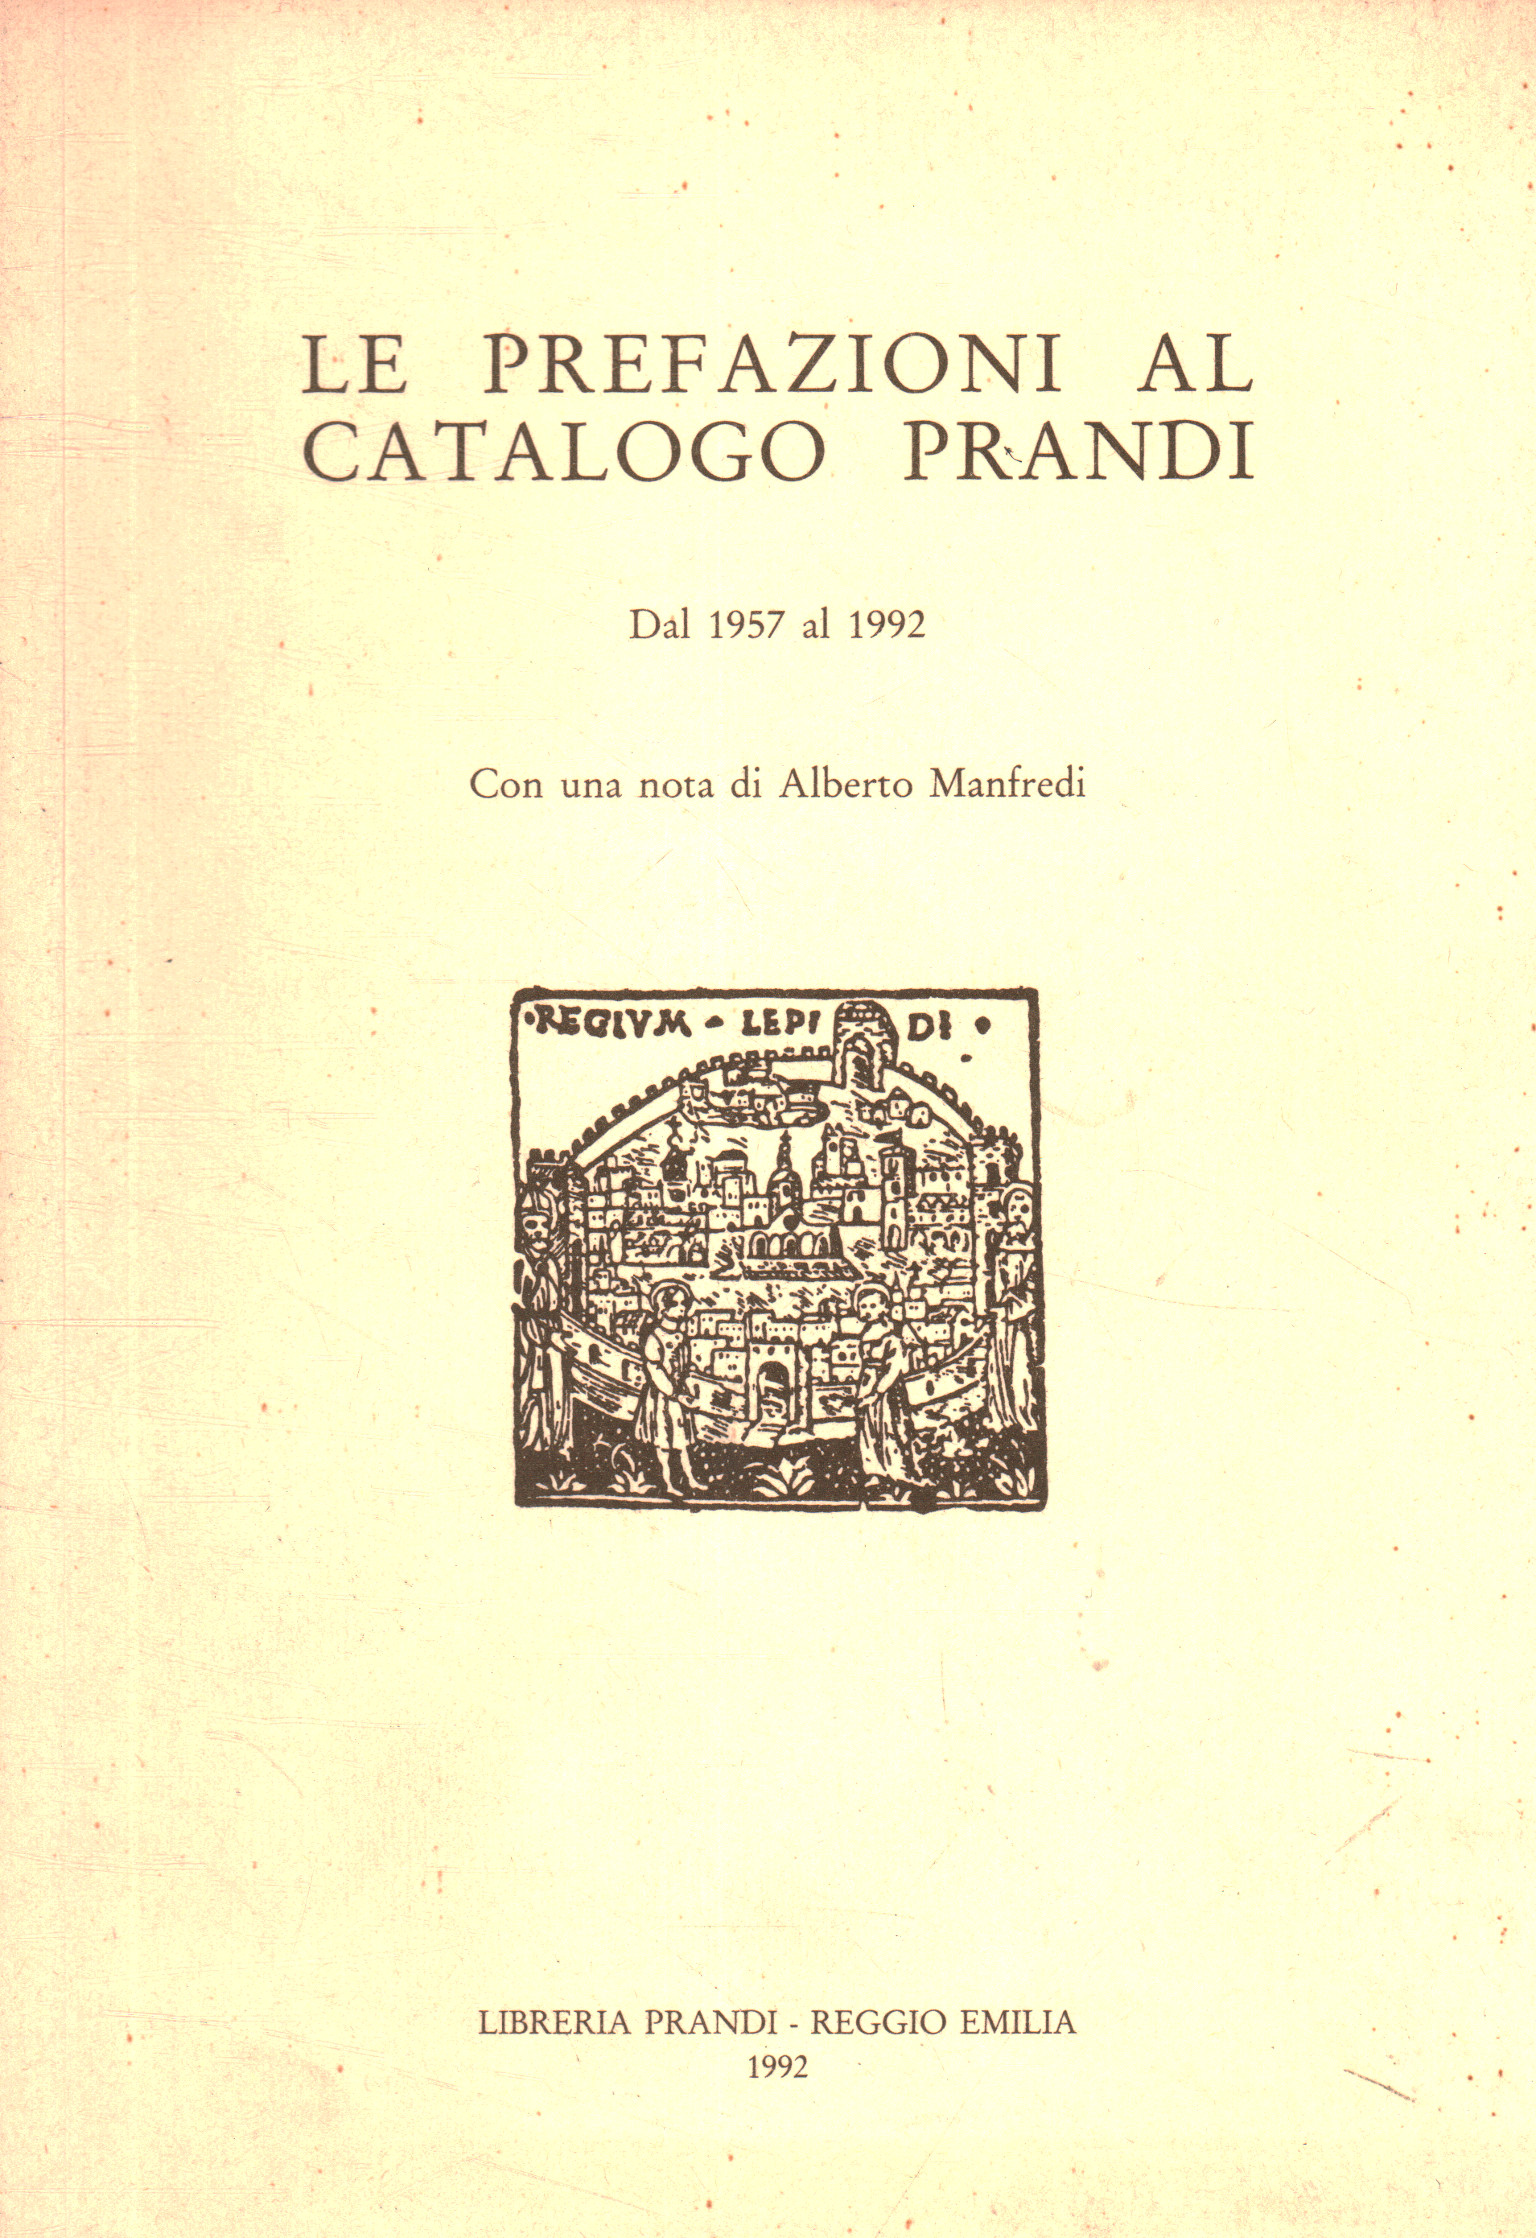 Die Vorworte zum Prandi-Katalog